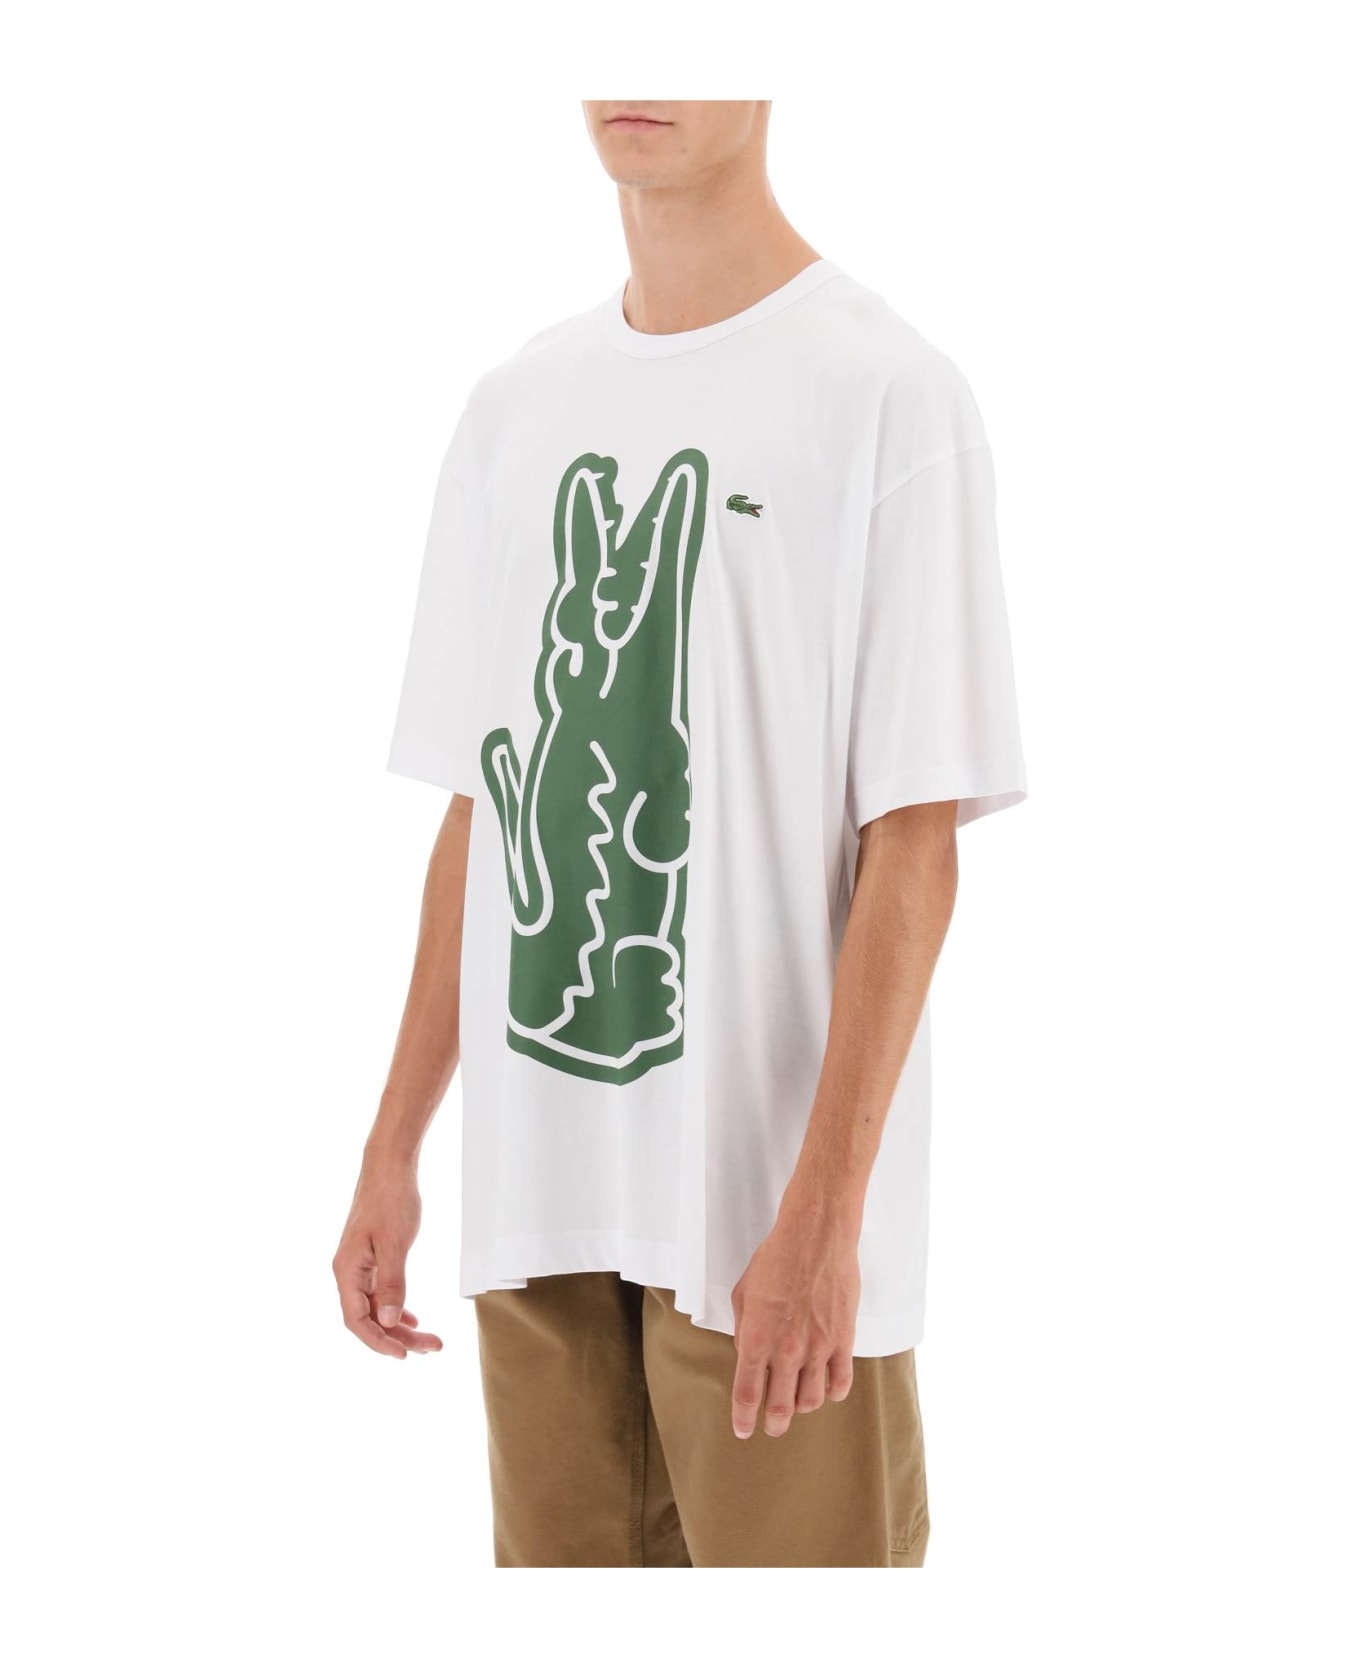 Comme des Garçons Shirt Boy X Lacoste Crocodile Print T-shirt - White